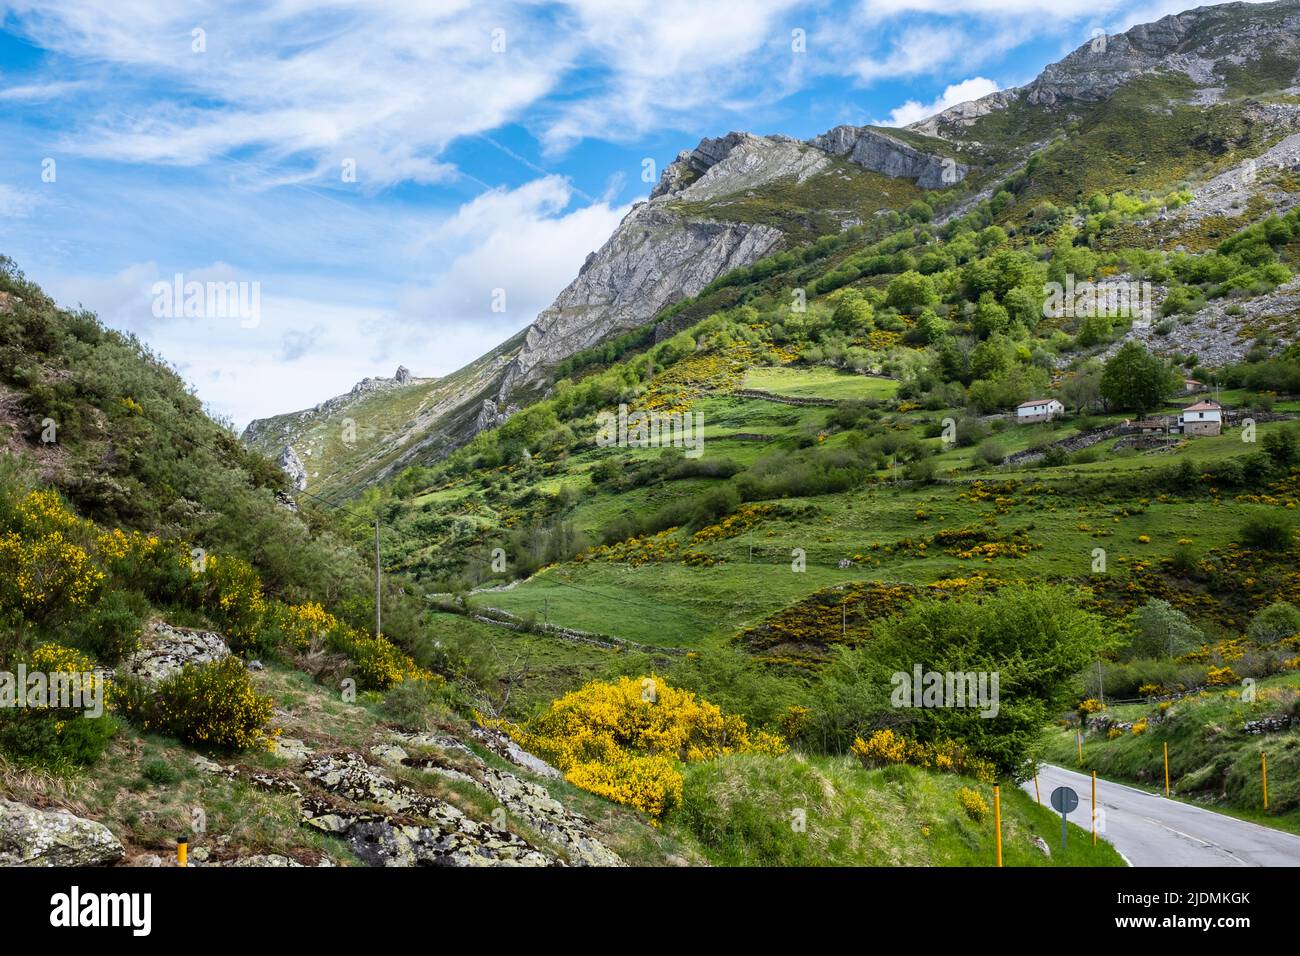 Spanien, Asturien. Die Landschaft der kantabrischen Berge nähert sich dem Naturpark Somiedo. Besen und Gorse wachsen an den Hängen. Stockfoto